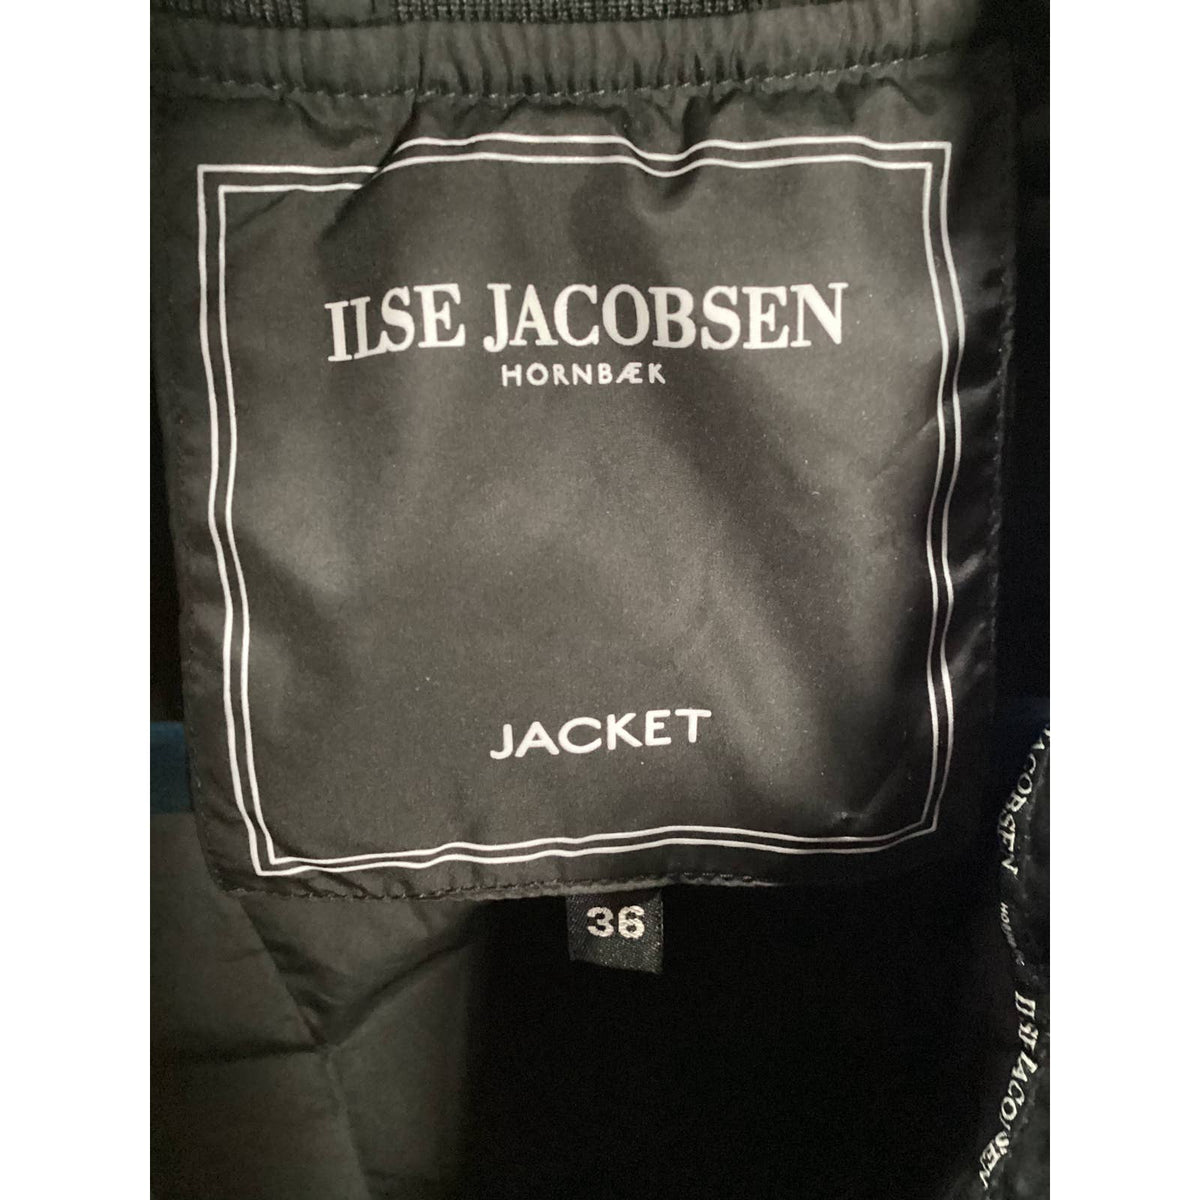 Ilse Jacobsen Jacket Sz. 36